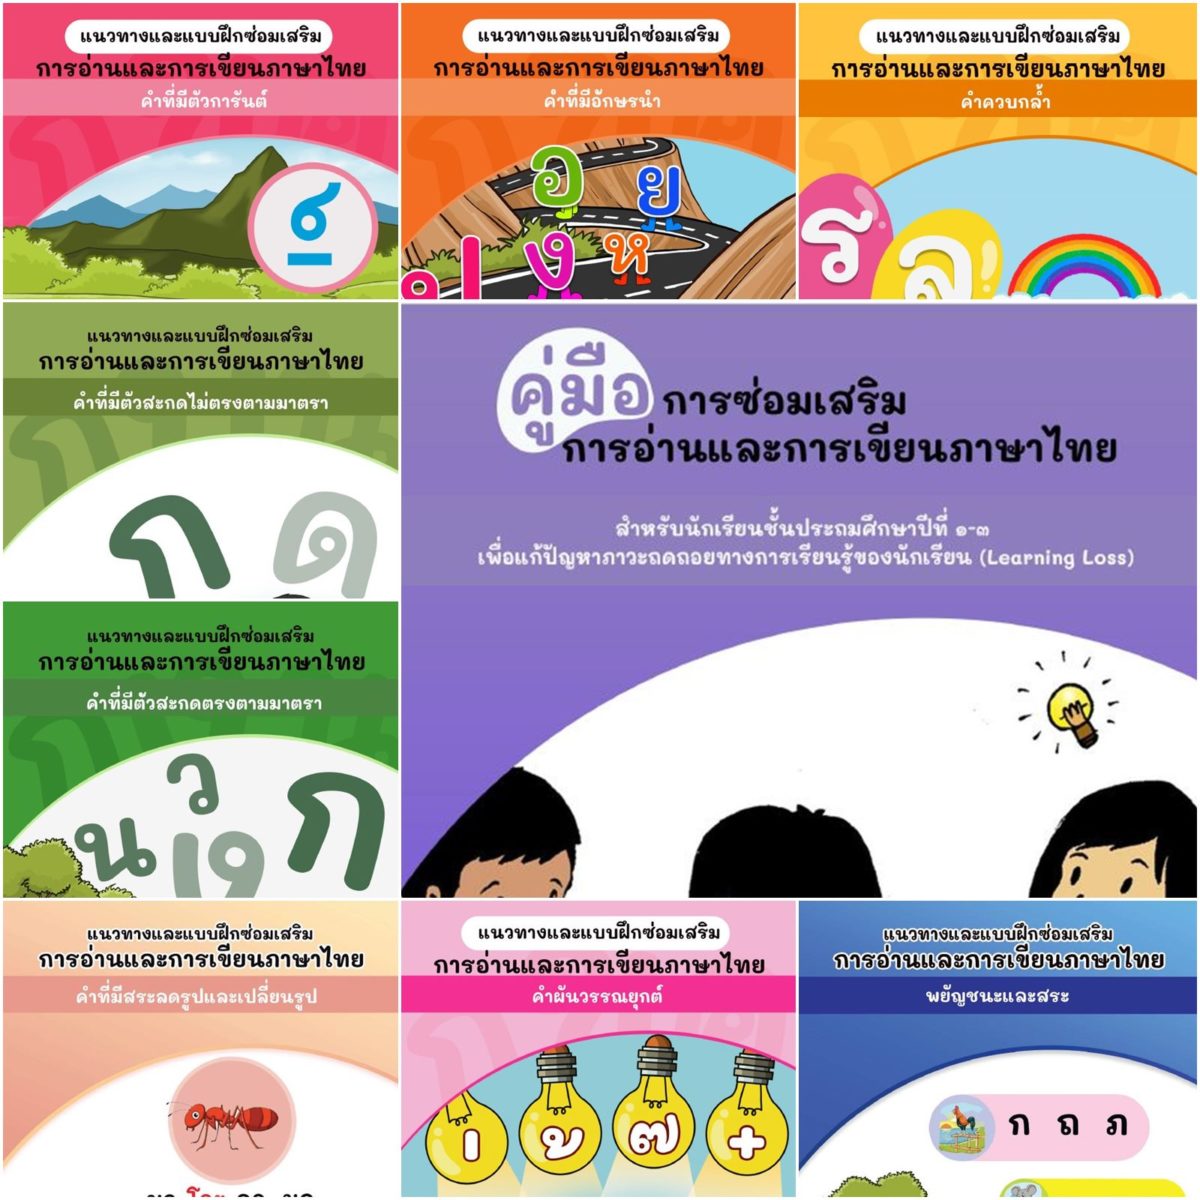 ดาวน์โหลดฟรี คู่มือการซ่อมเสริมการอ่านและการเขียนภาษาไทย สำหรับนักเรียน ป.1 - 3 เพื่อแก้ปัญหาภาวะถดถอยทางการเรียนรู้ของนักเรียน (Learning Loss)